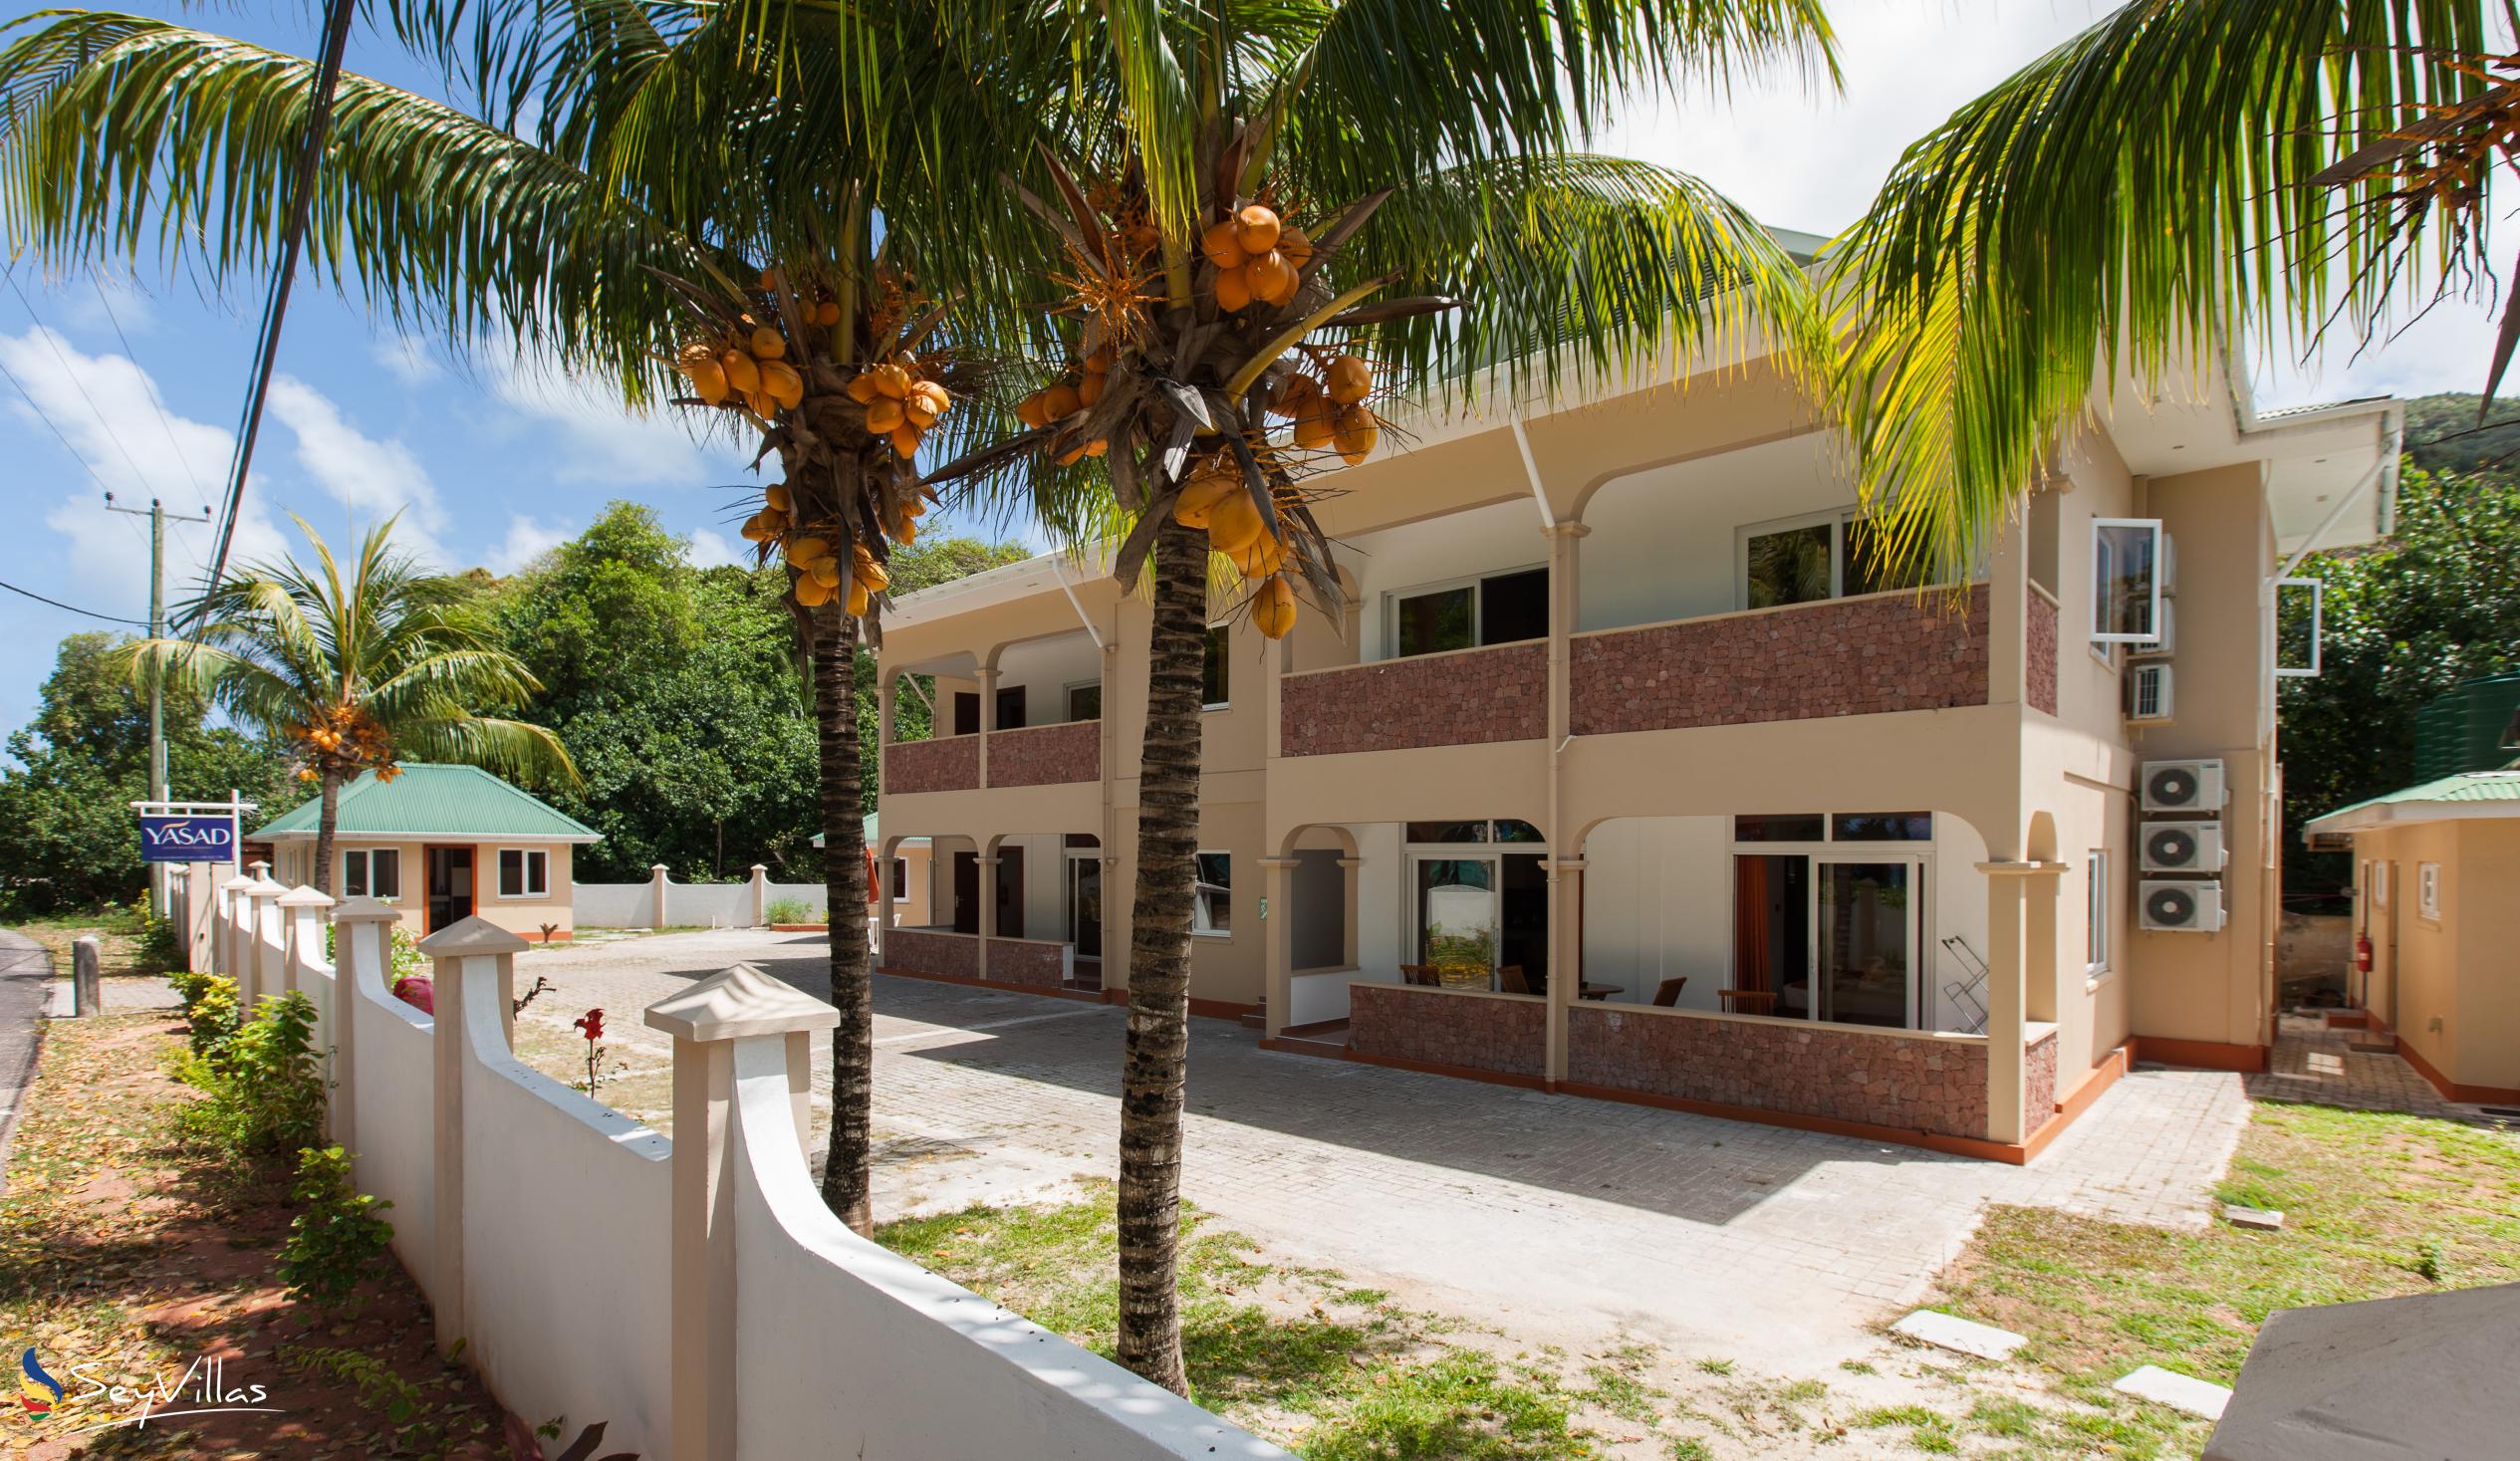 Foto 47: YASAD Luxury Beach Residence - Appartement mit 2 Schlafzimmern - Praslin (Seychellen)